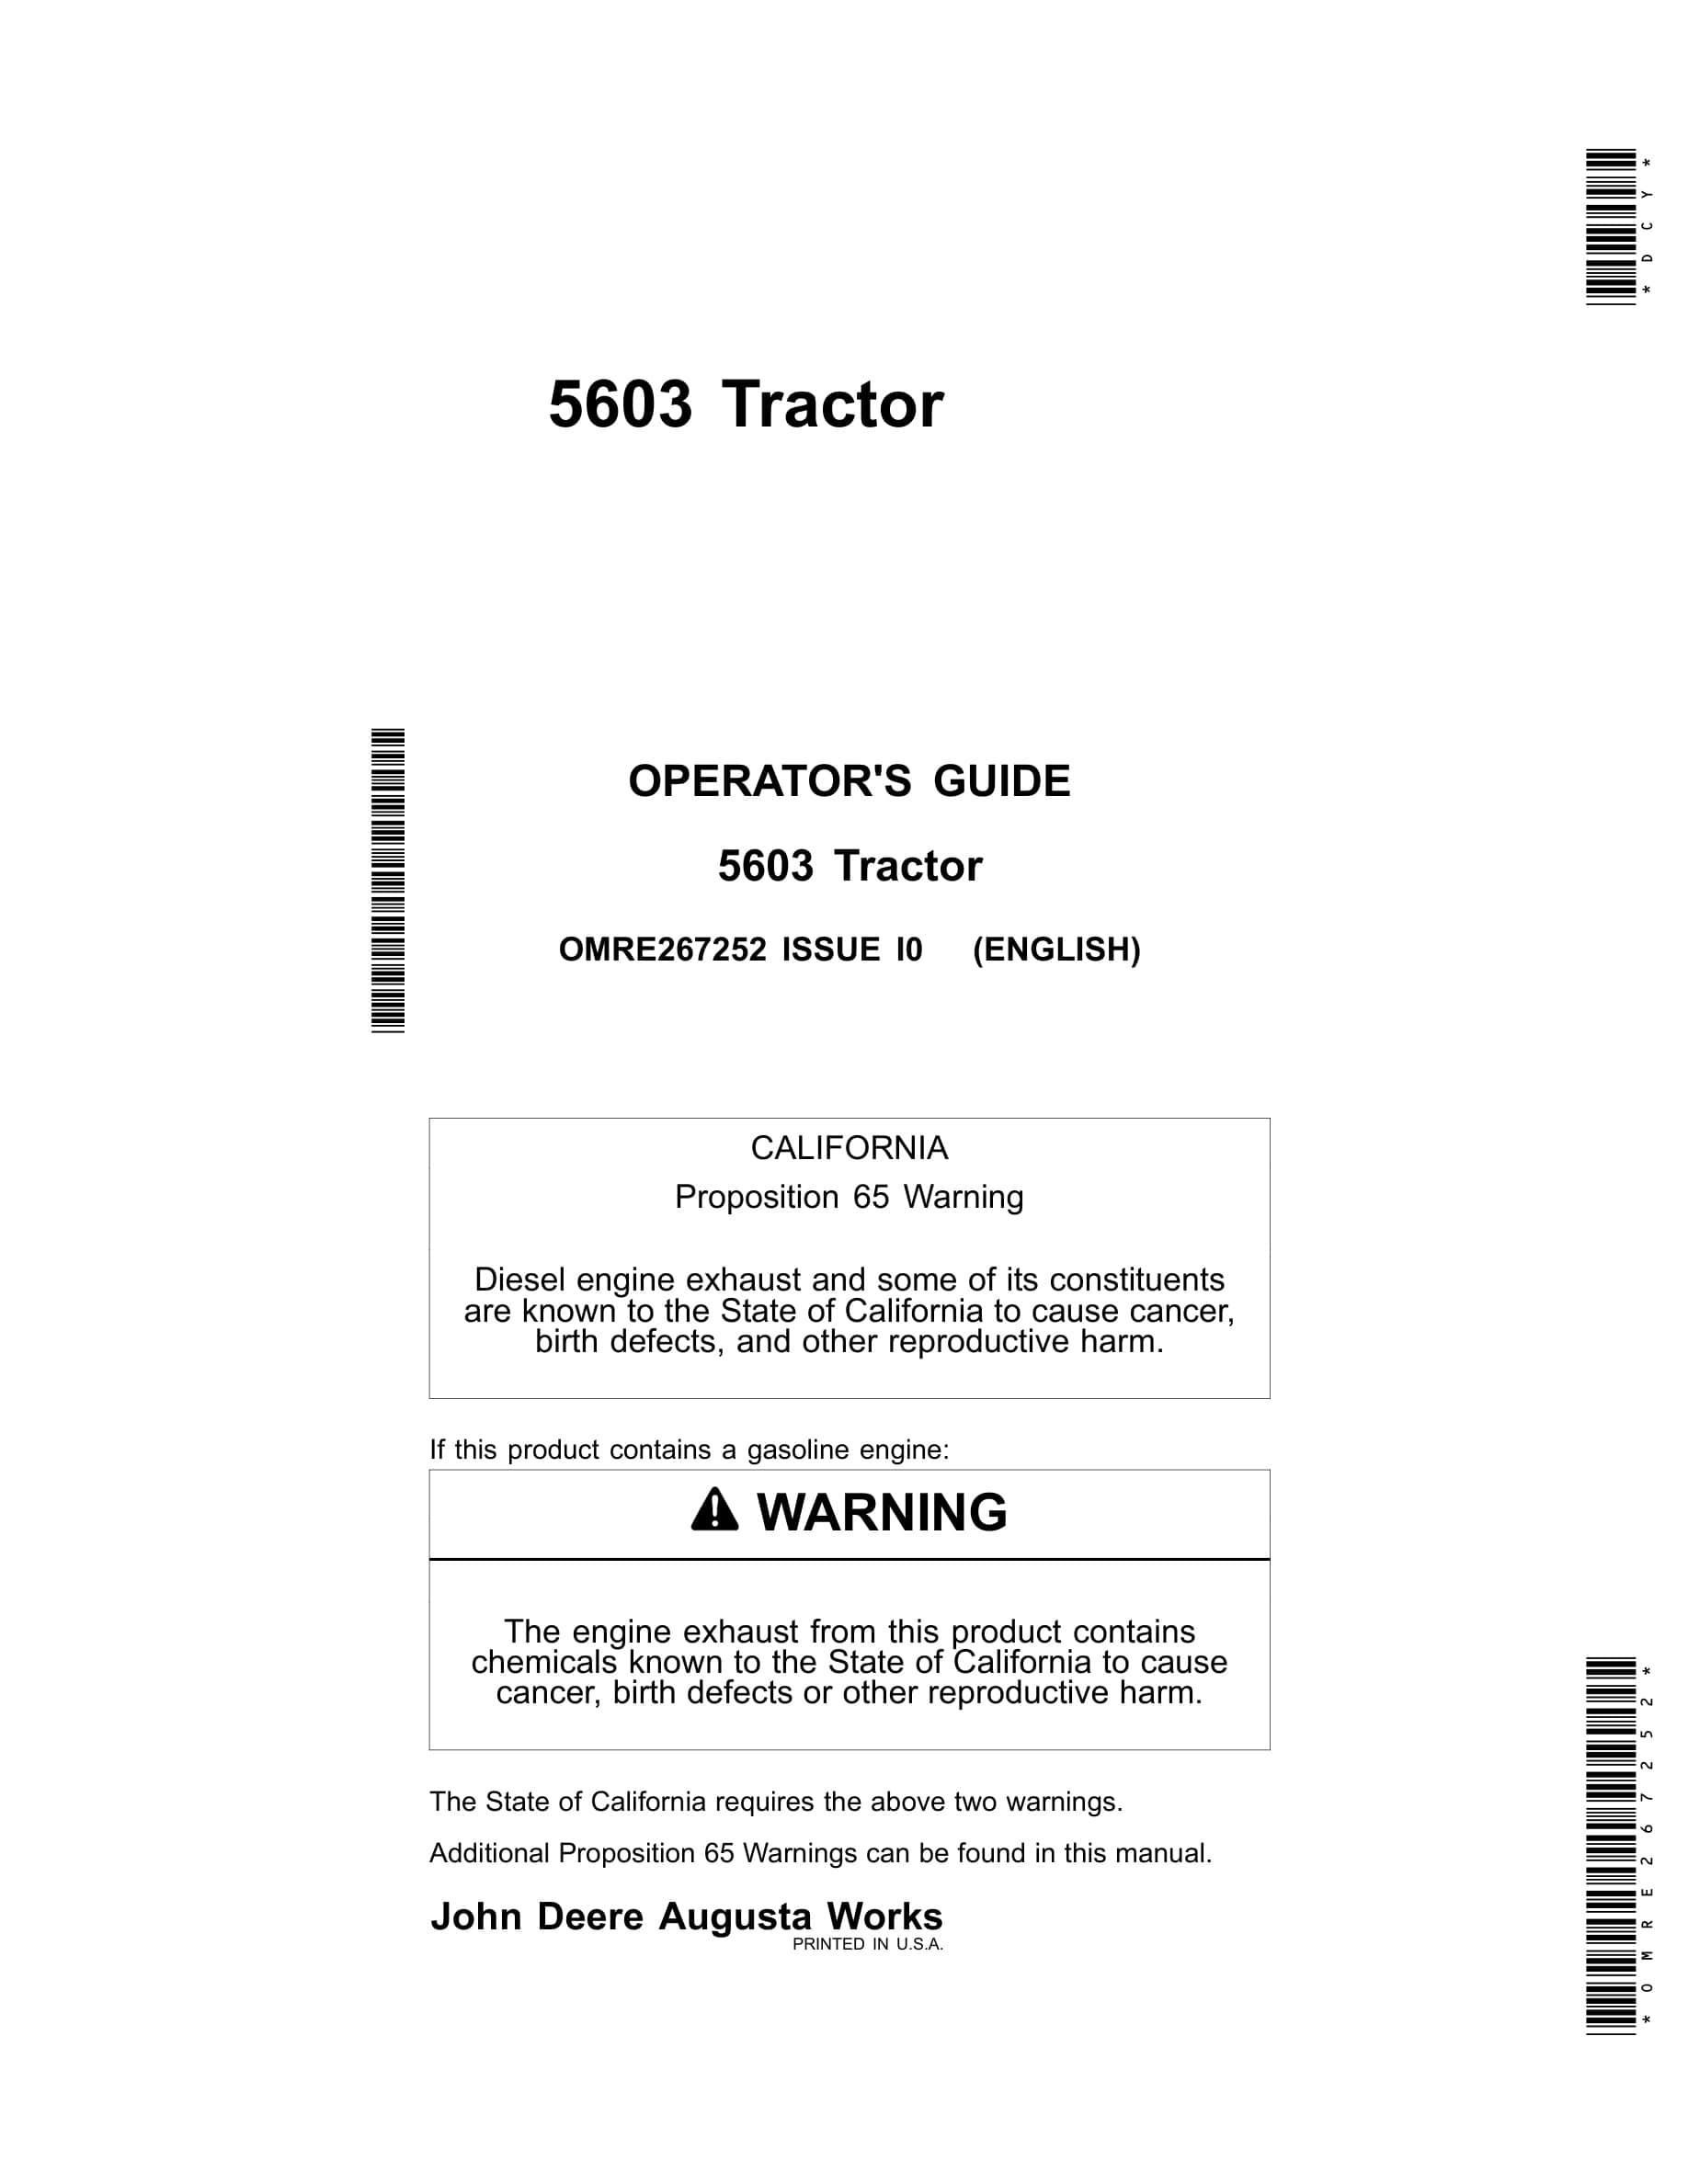 John Deere 5603 Tractor Operator Manual OMRE267252-1